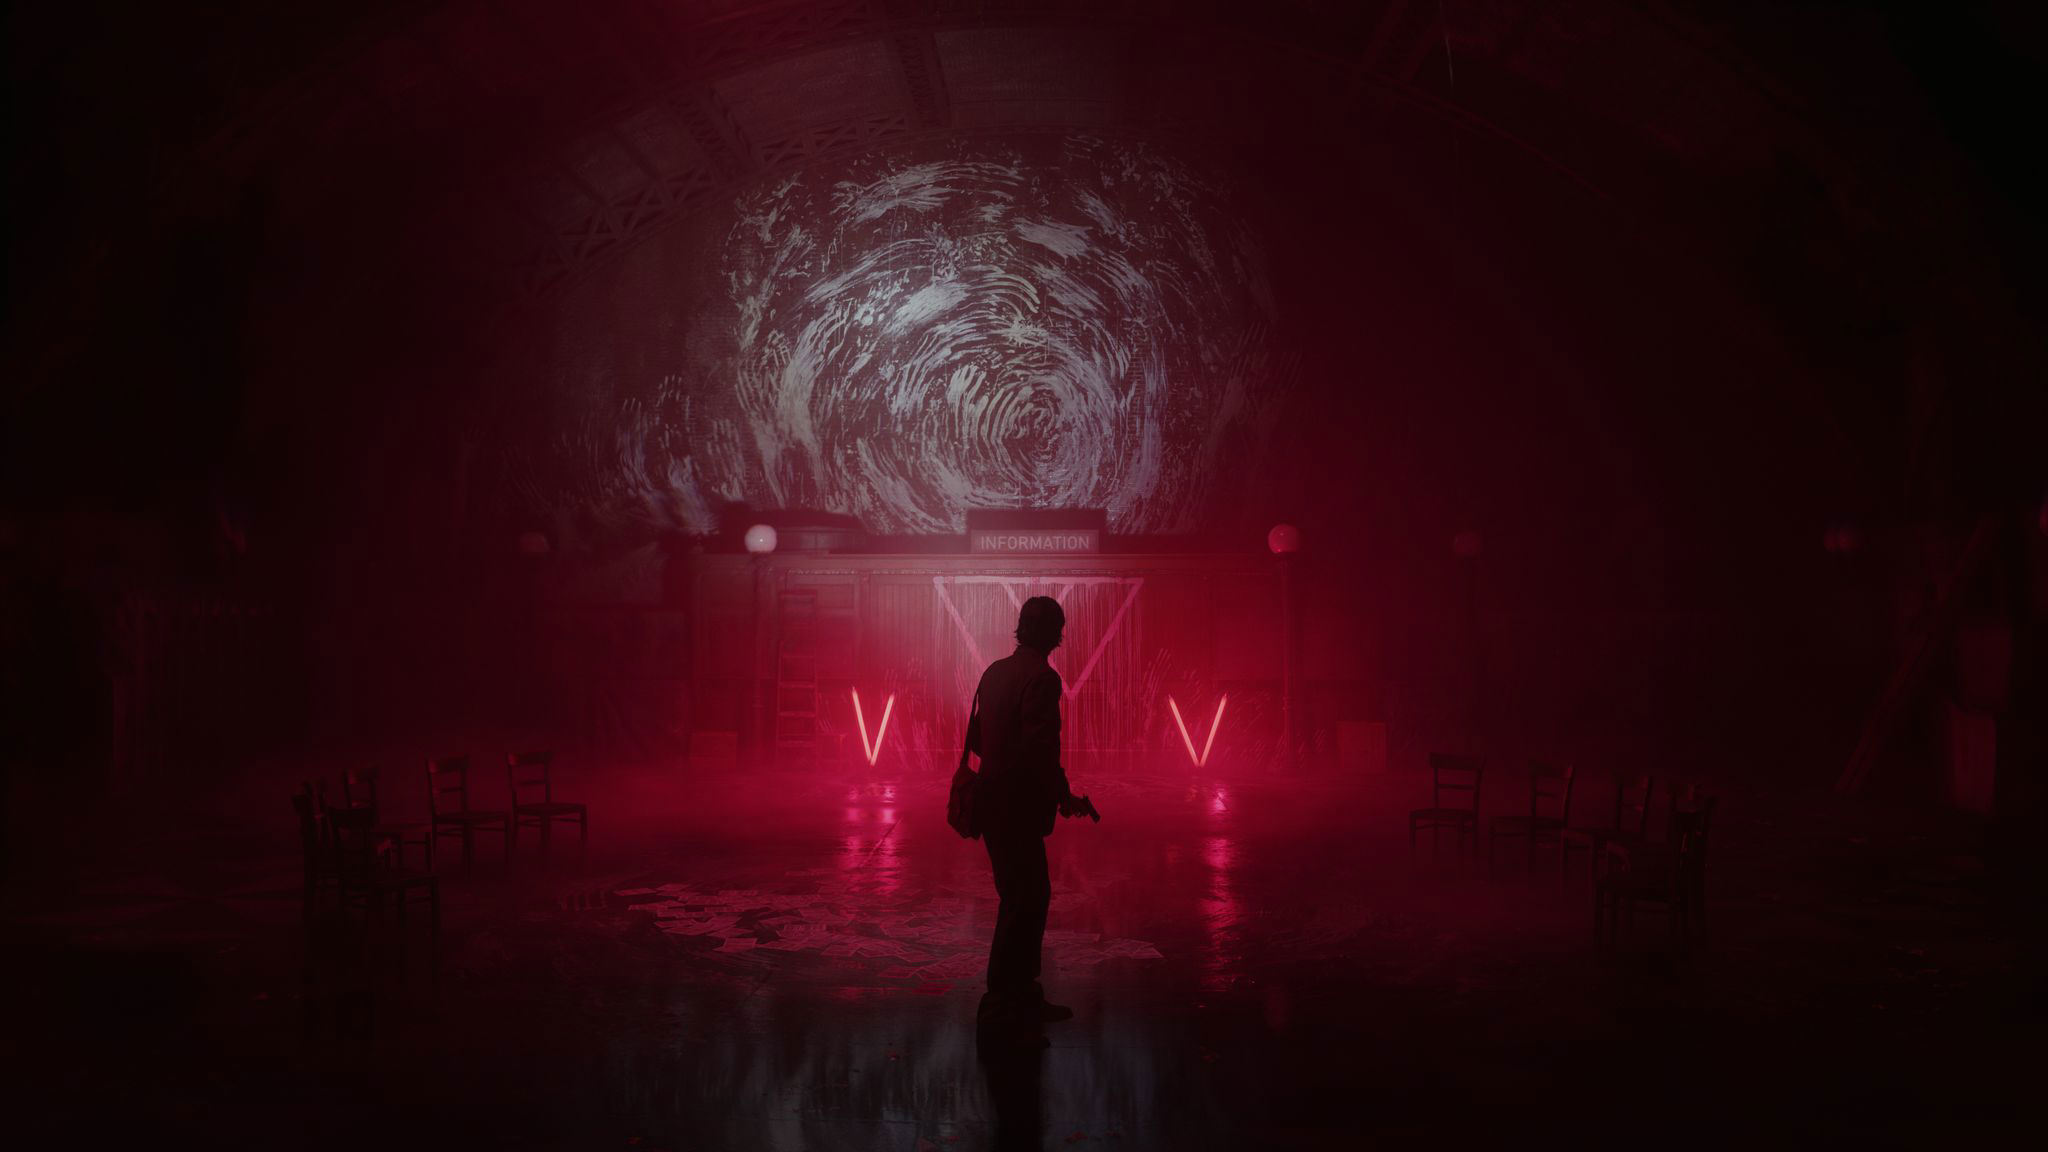 Impresiones Alan Wake 2: El escritor vuelve, acompañado, con una aventura  de terror con un tono fascinante